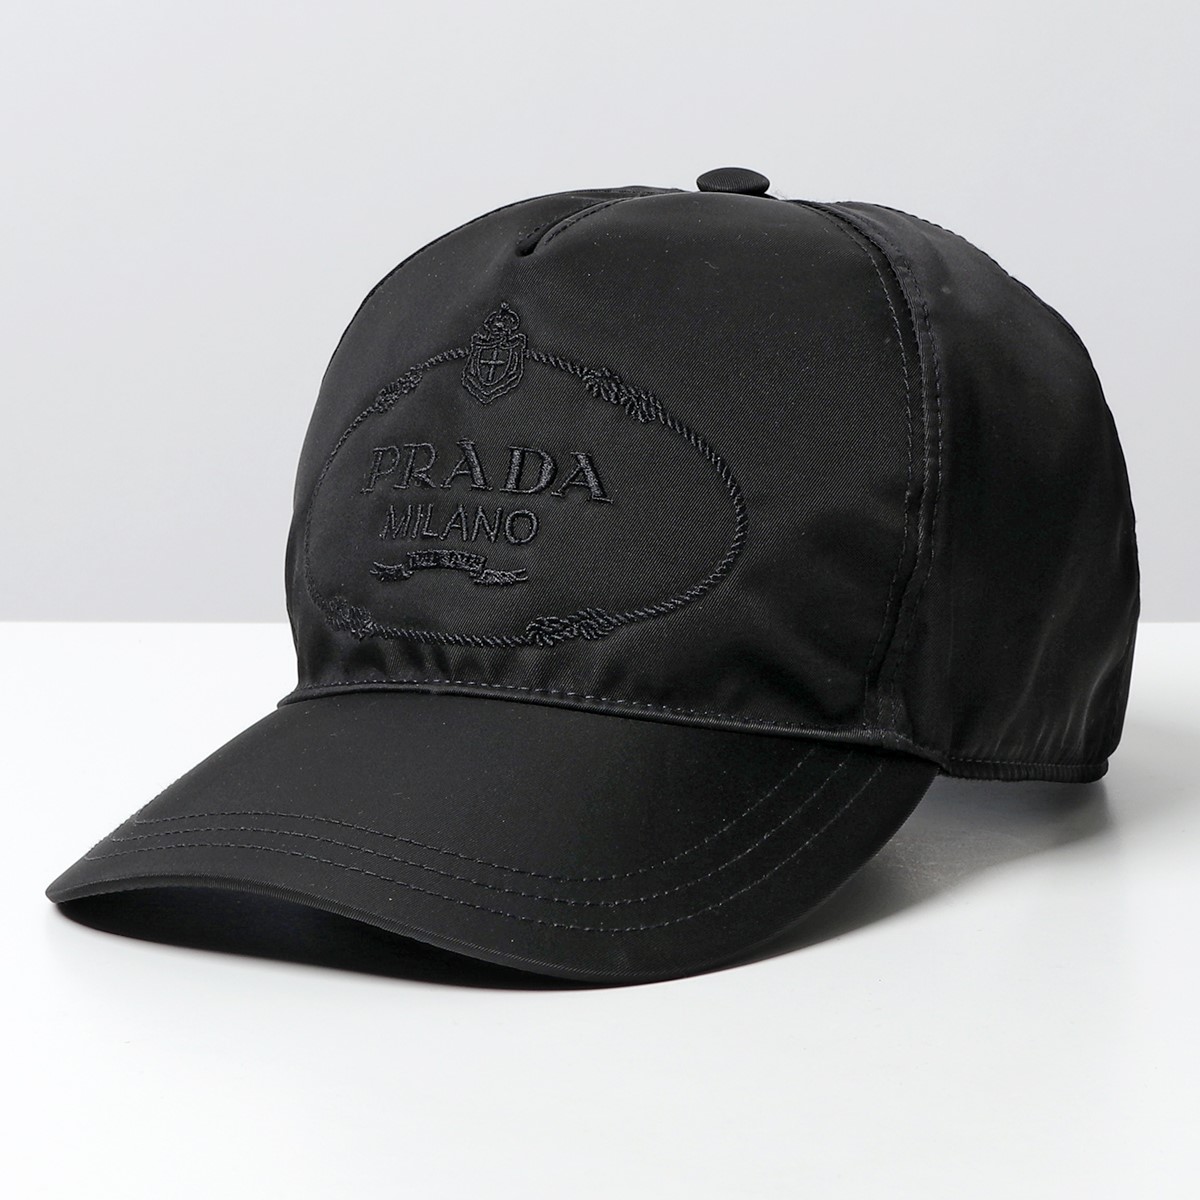 PRADA プラダ 2HC179 2DMI リナイロン ベースボールキャップ 帽子 ロゴ刺繍 F0002/NERO メンズ | インポートセレクト  musee